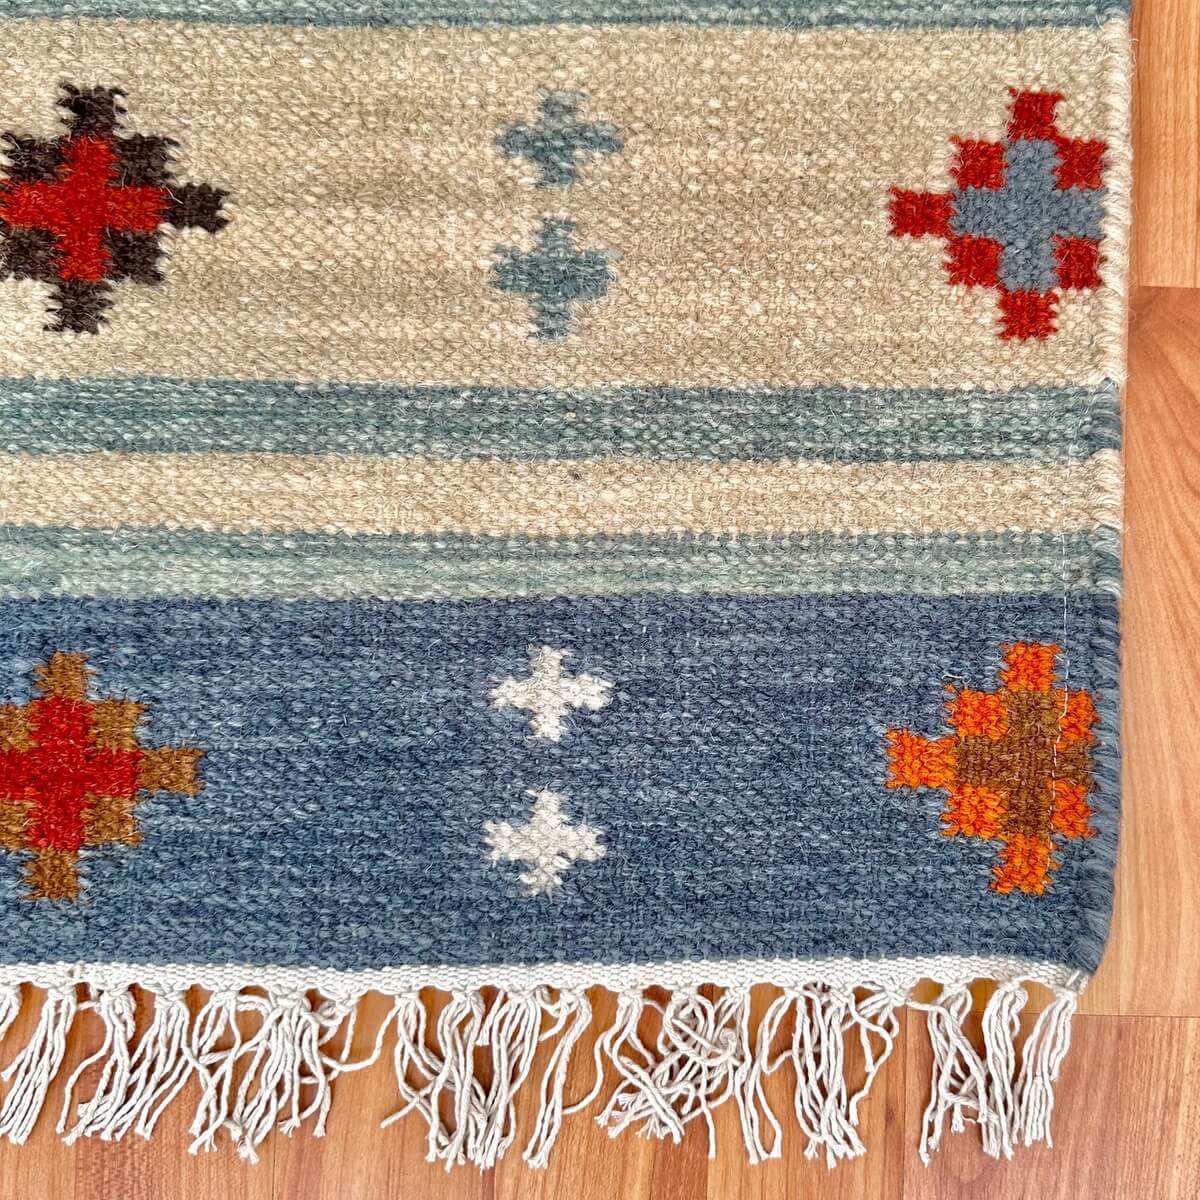 covor kilim Bimala, tesut traditional din lana, model in carouri in nuante bej si albastru, colt